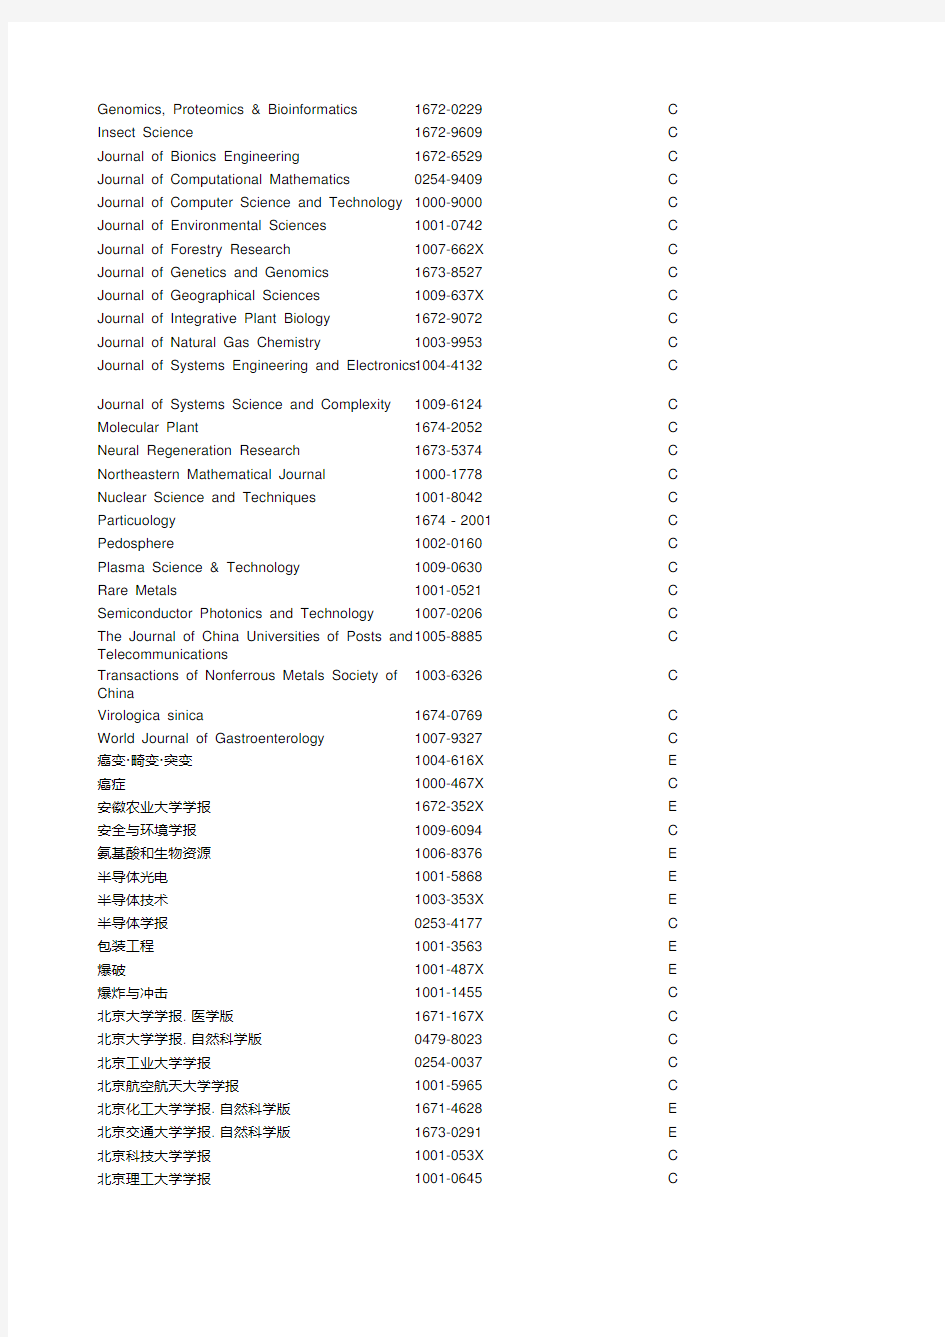 中国核心科学期刊排名